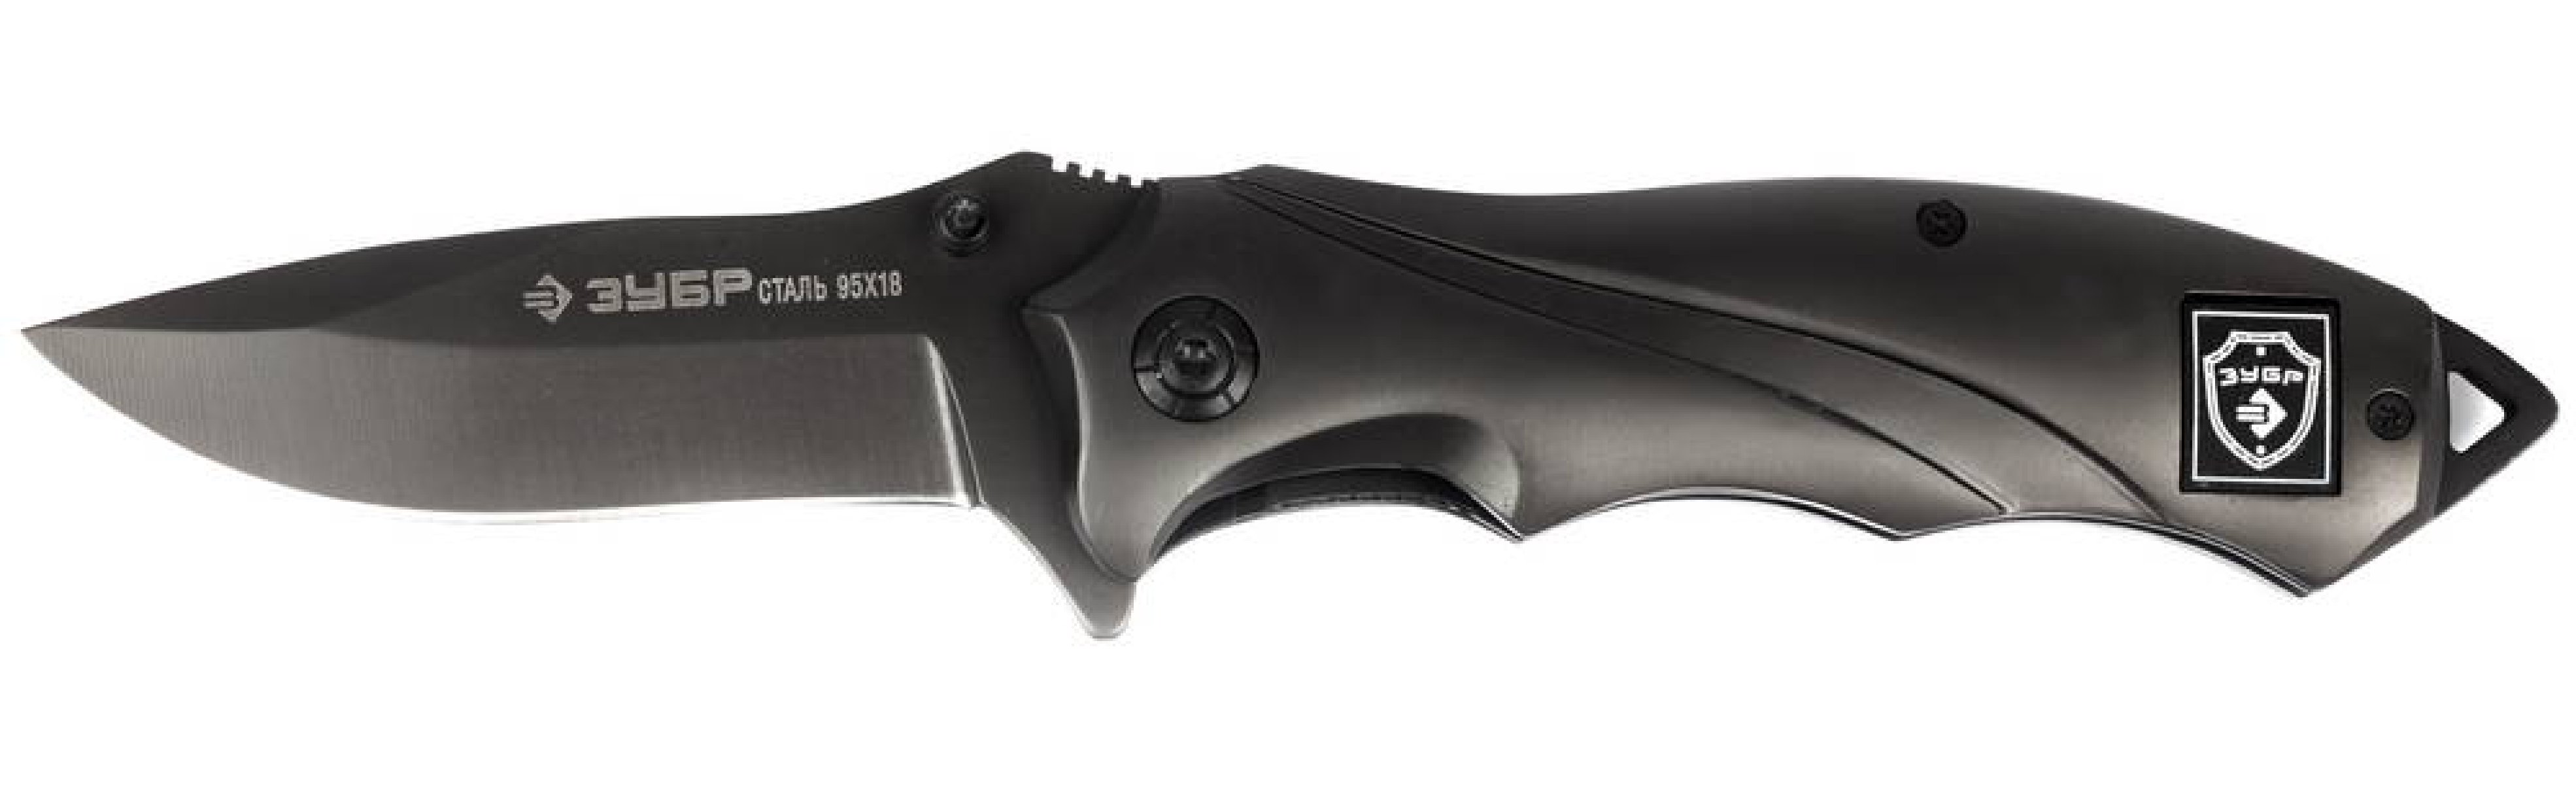 Складной нож ЗУБР Титан 210 мм лезвие 80мм цельнометаллическая рукоятка (47719)Купить